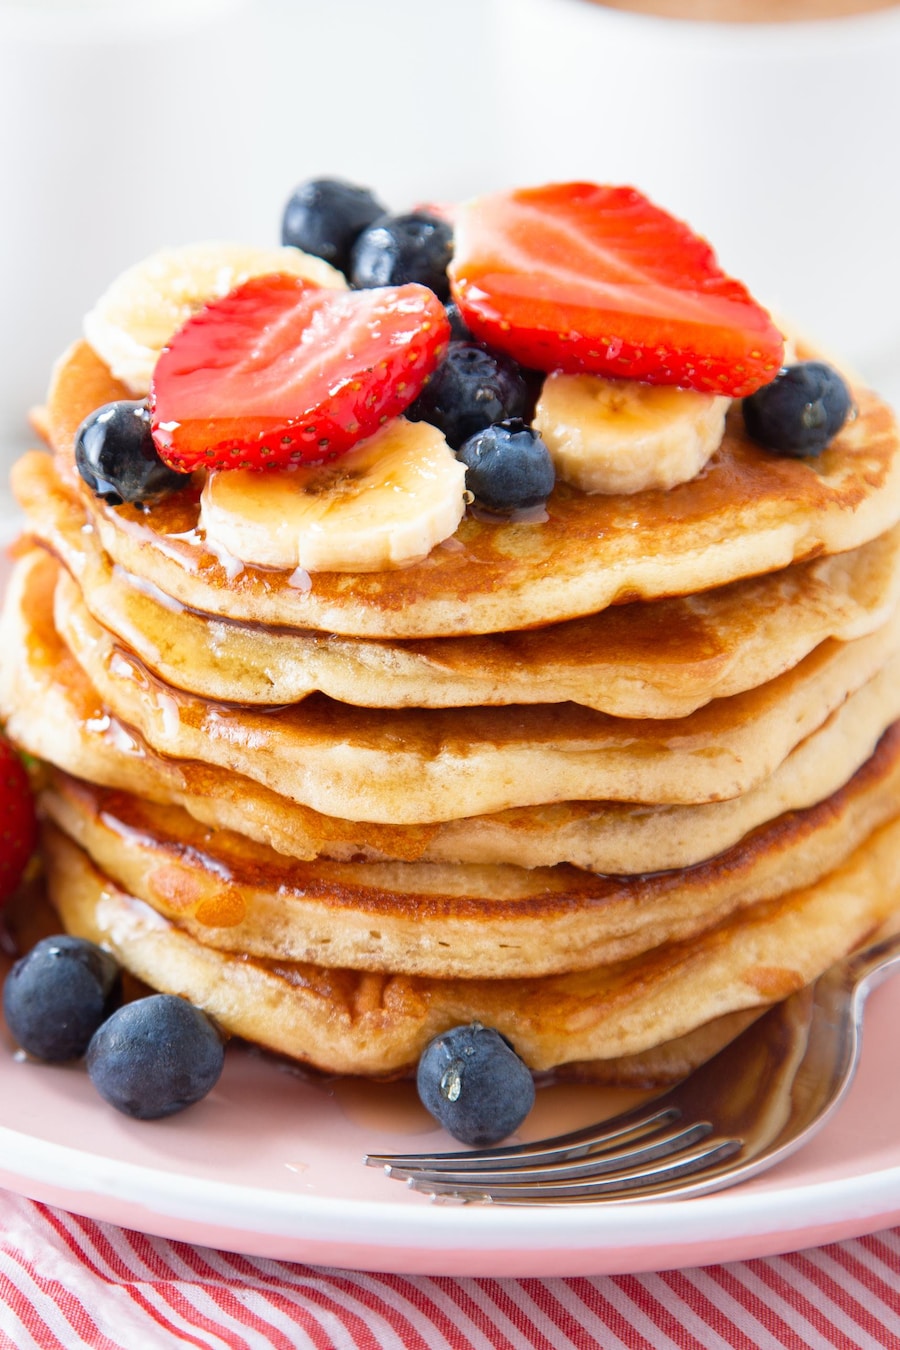 Des pancakes dans une assiette avec des bleuets, des fraises et des bananes.